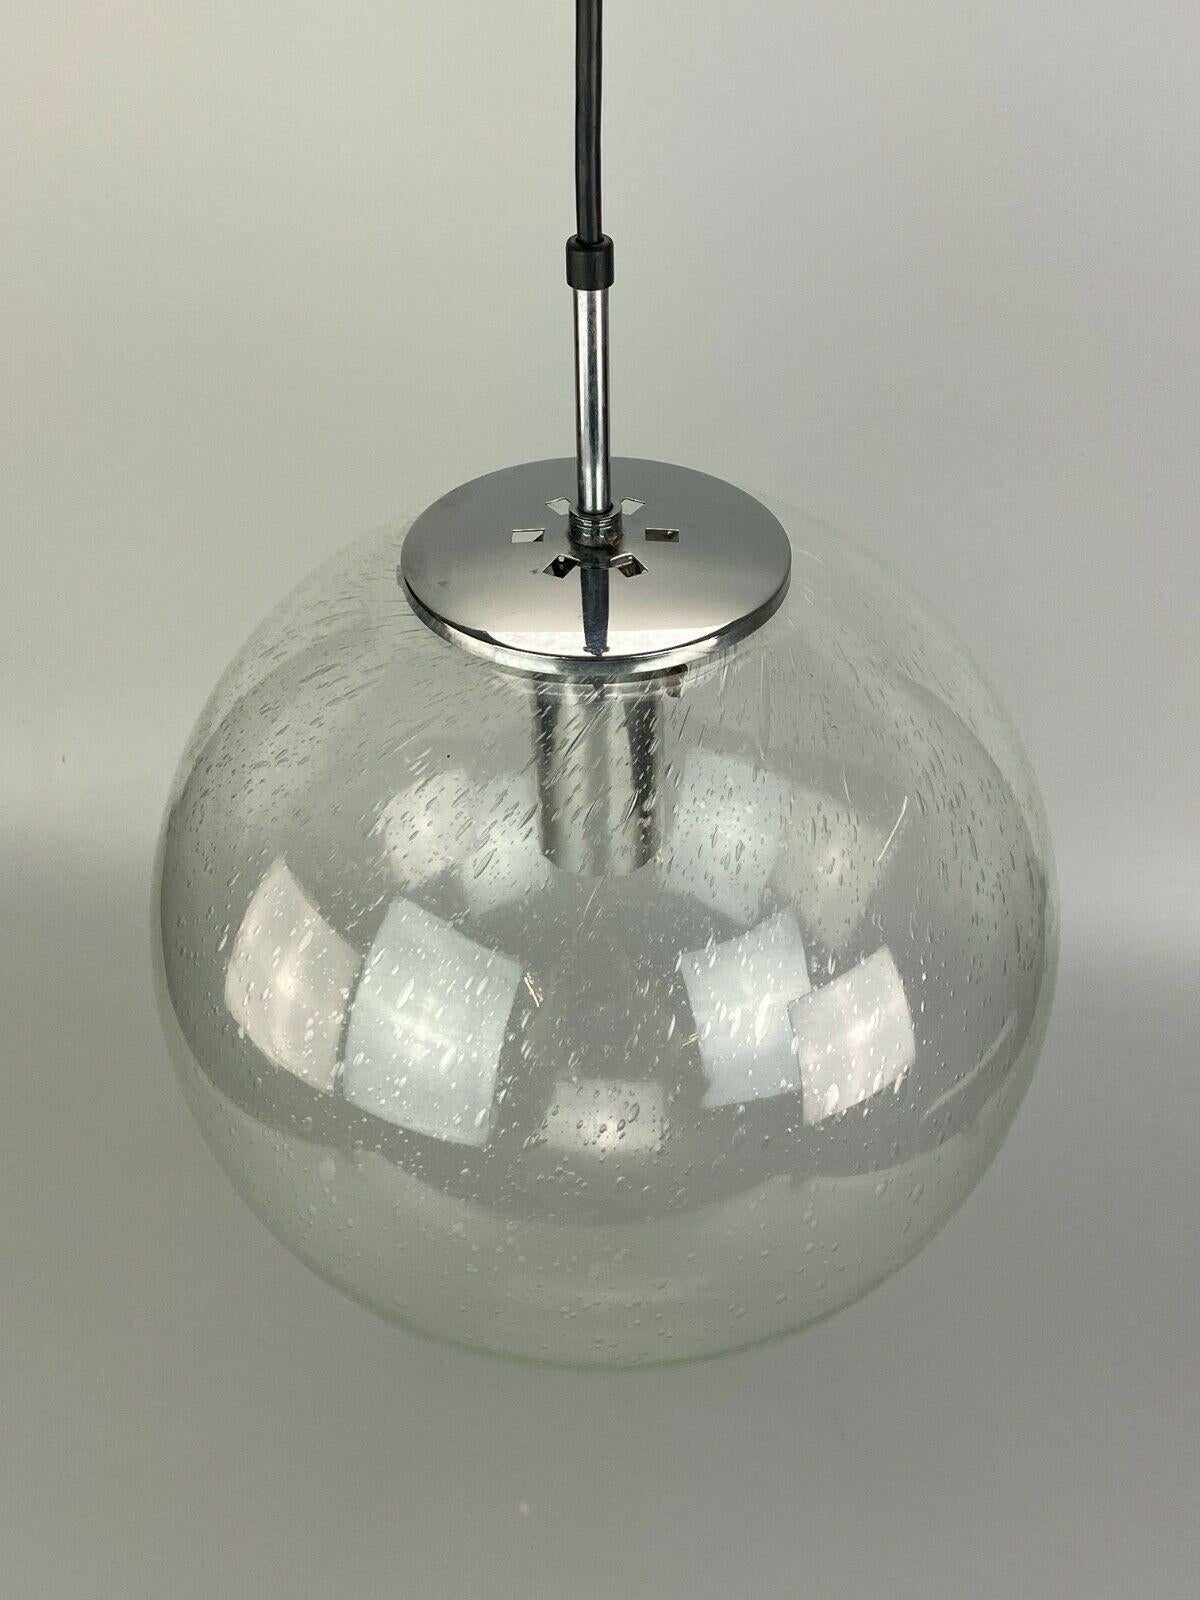 German XL 60s 70s Lamp Light Ceiling Lamp Limburg Spherical Lamp Ball Design  For Sale